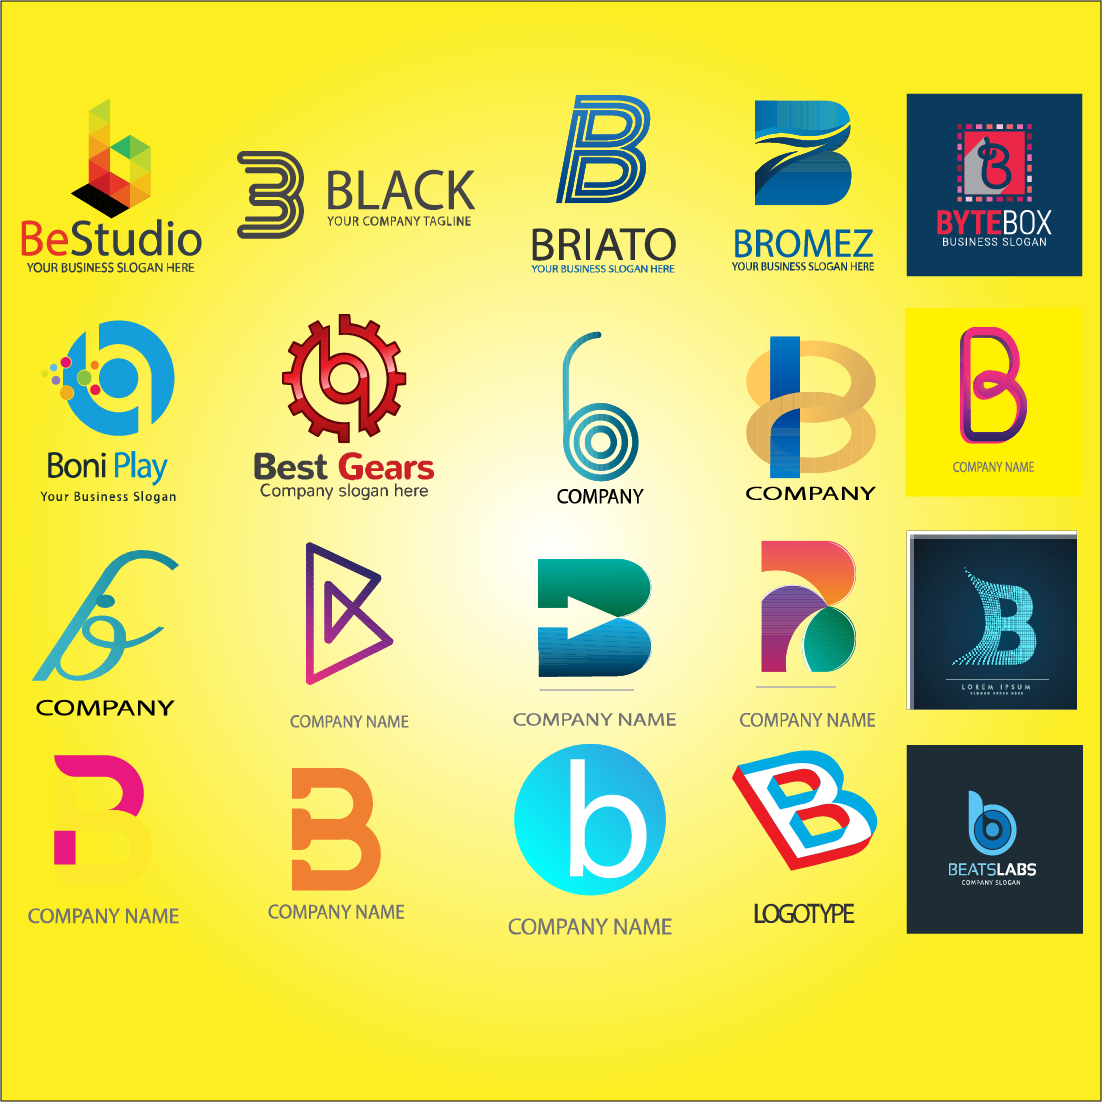 Cool Letter B Logos